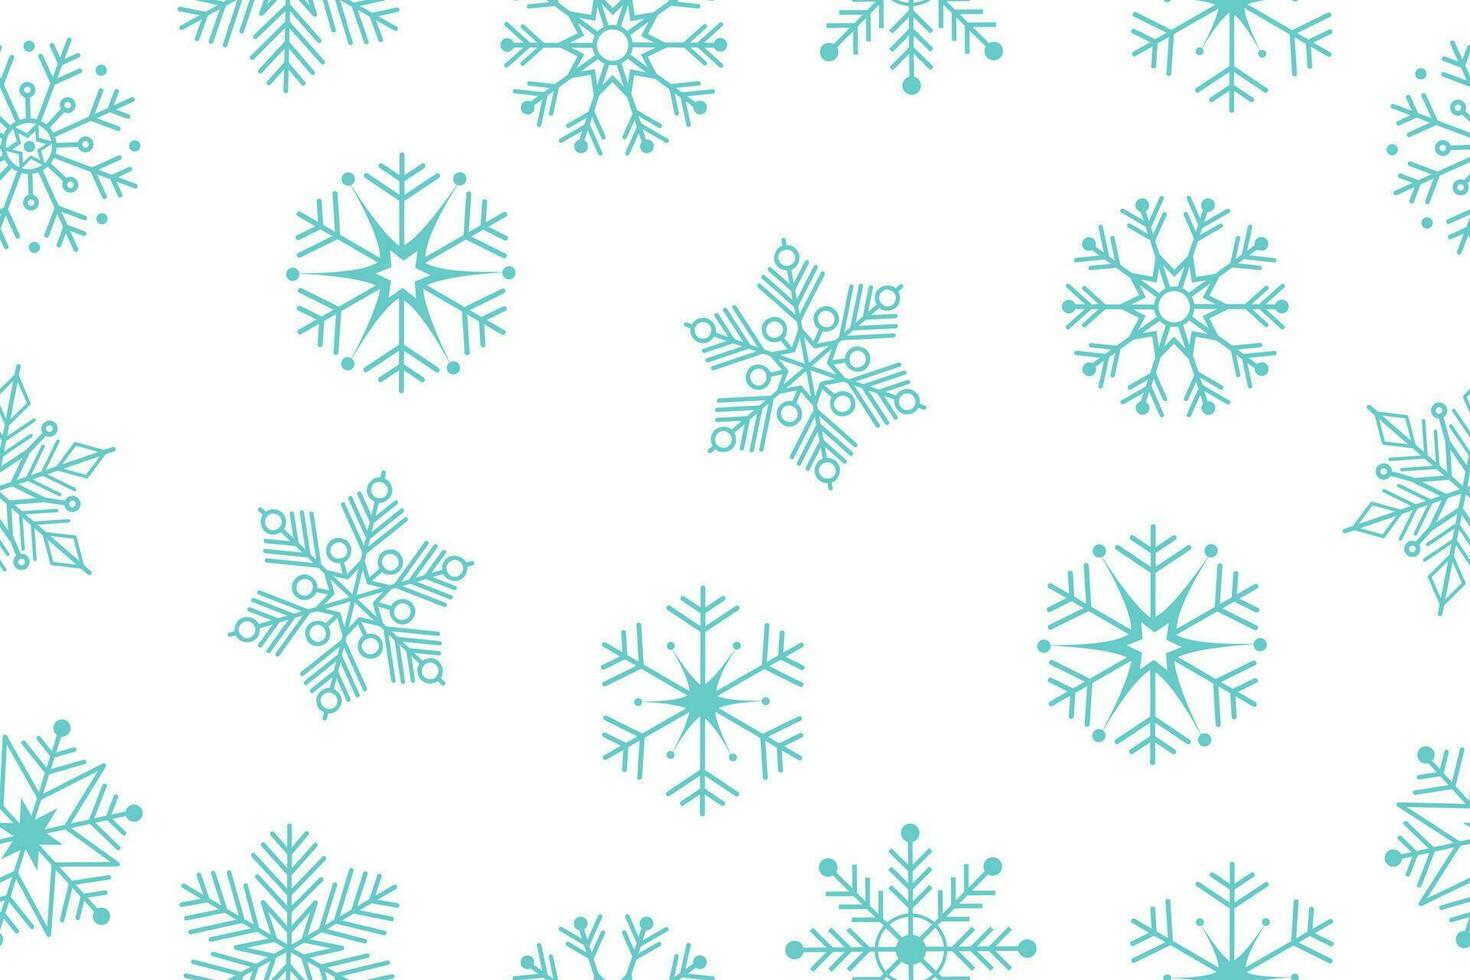 sömlös vektor mönster med snöflingor. vektor bakgrund. jul bakgrund från snöflingor av annorlunda former. vektor illustration.